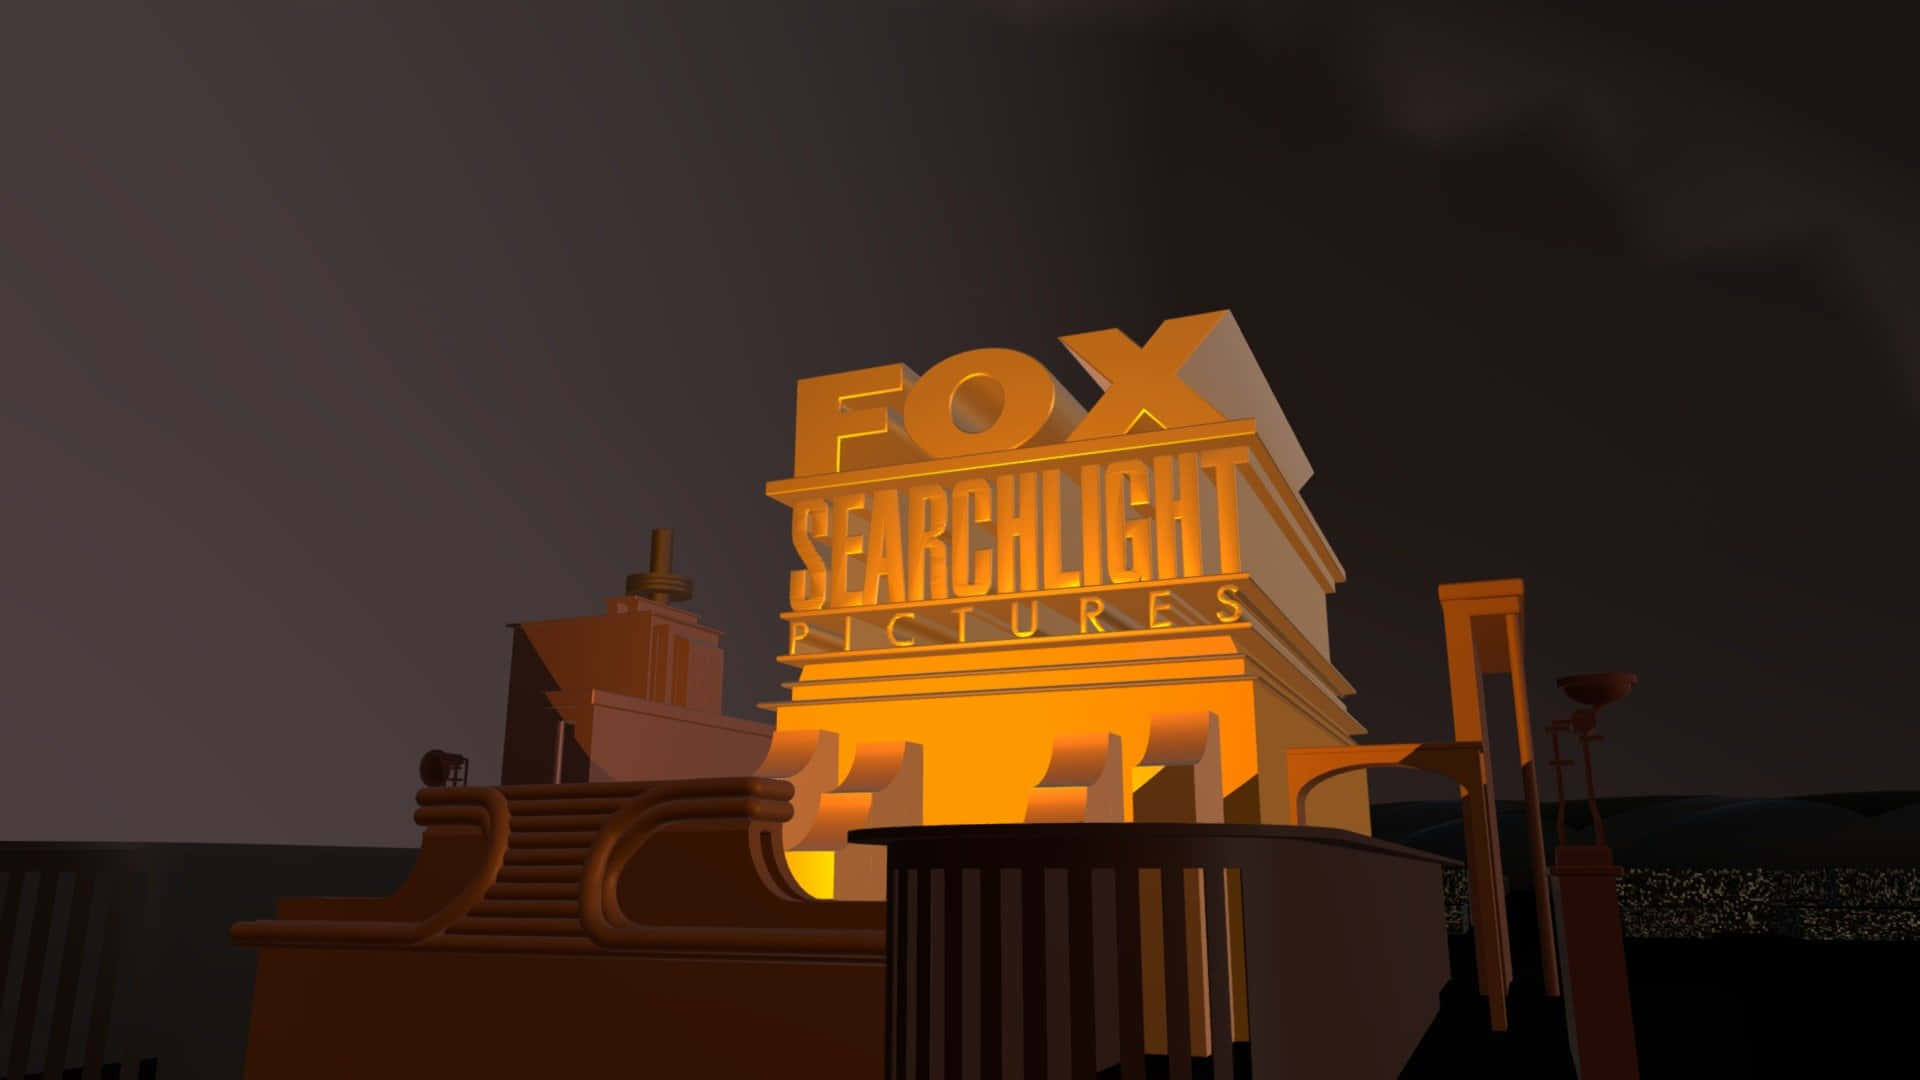 Oplyser fremtiden med Searchlightstråler.